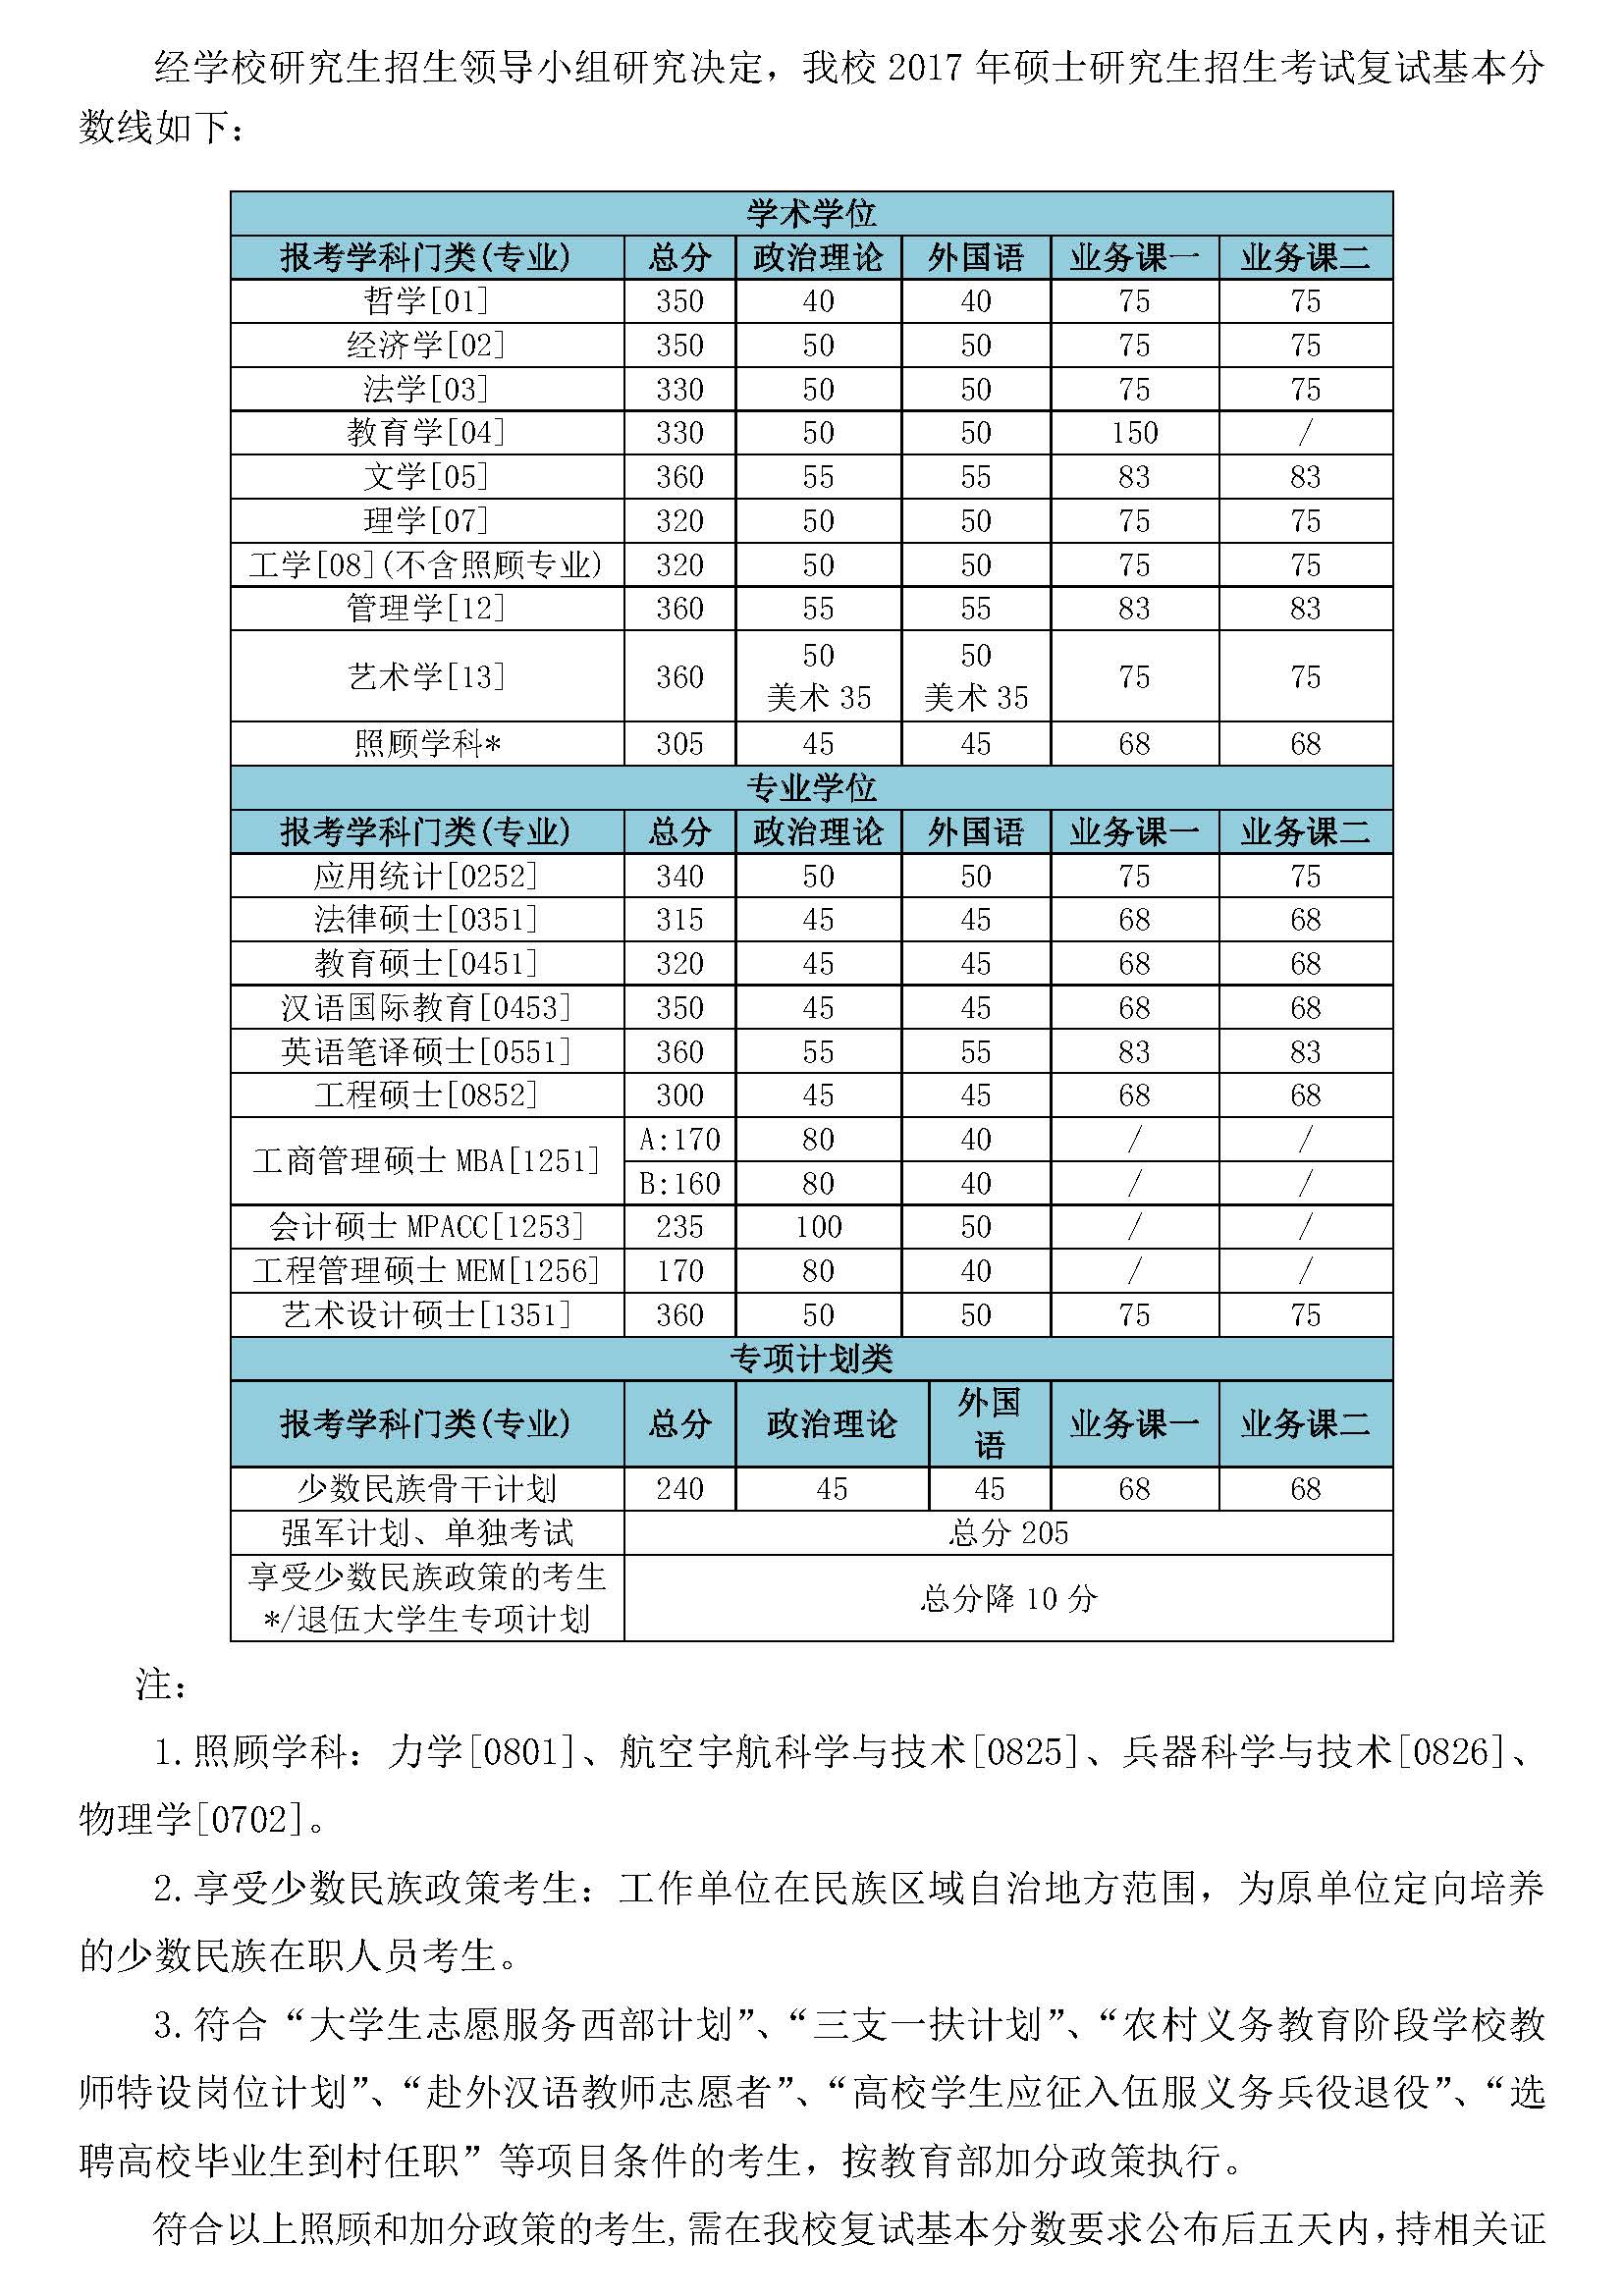 2017年北京理工大学考研分数线公布